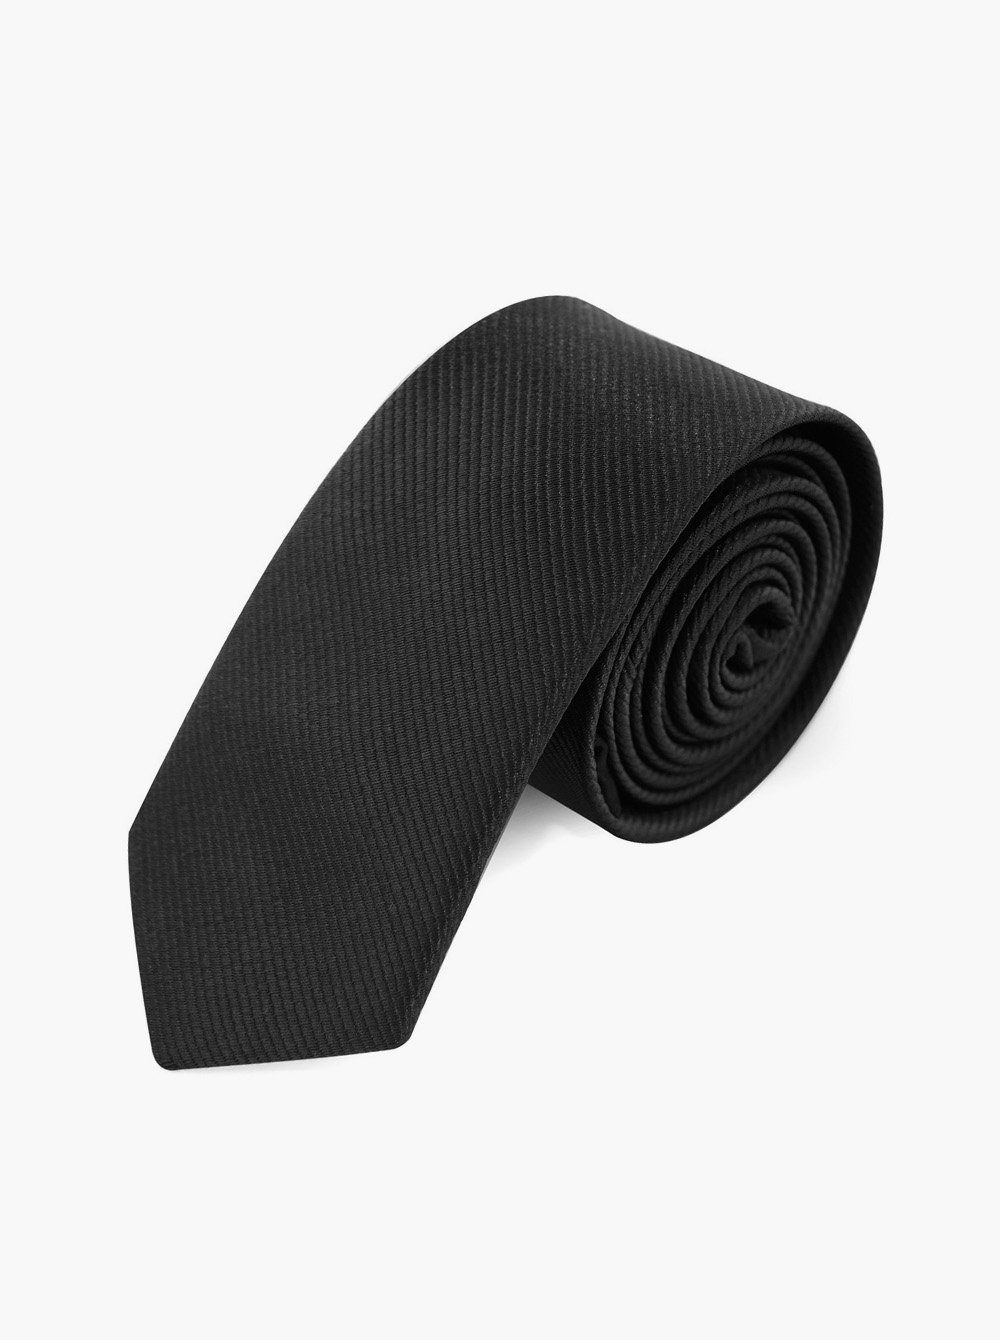 axy Krawatte Herren Krawatte 5.0 cm breit einfarbig perfektes Geschenk Seidenkrawatte, mit Geschenkbox Schwarz